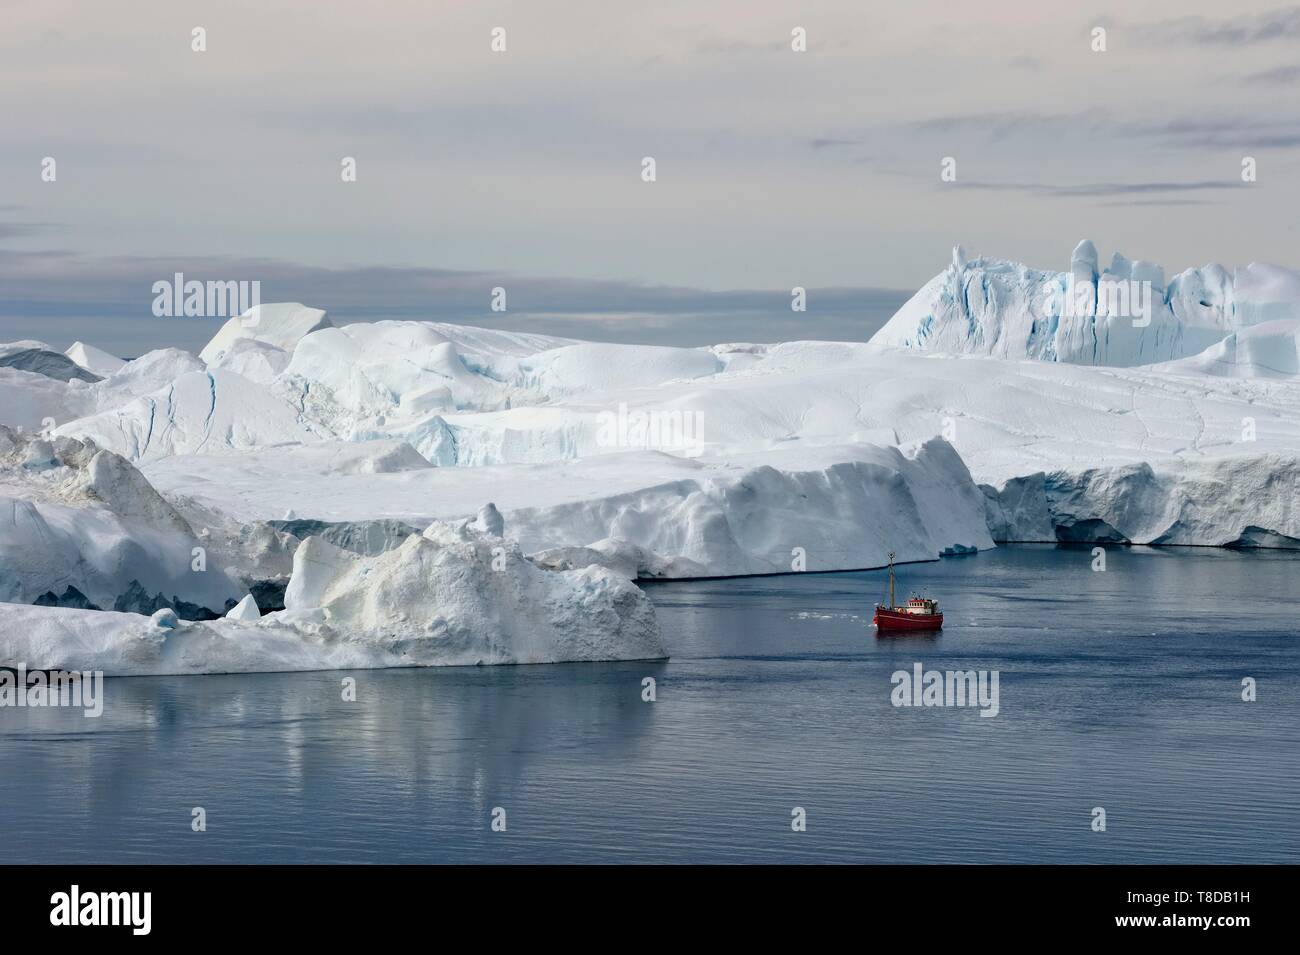 Grönland, Westküste, Diskobucht, Ilulissat Icefjord als Weltkulturerbe von der UNESCO, ist der Mund der Sermeq Kujalleq Jakobshavn Gletscher (Gletscher), Fischerboot am Fuße der Eisberge aufgeführt Stockfoto